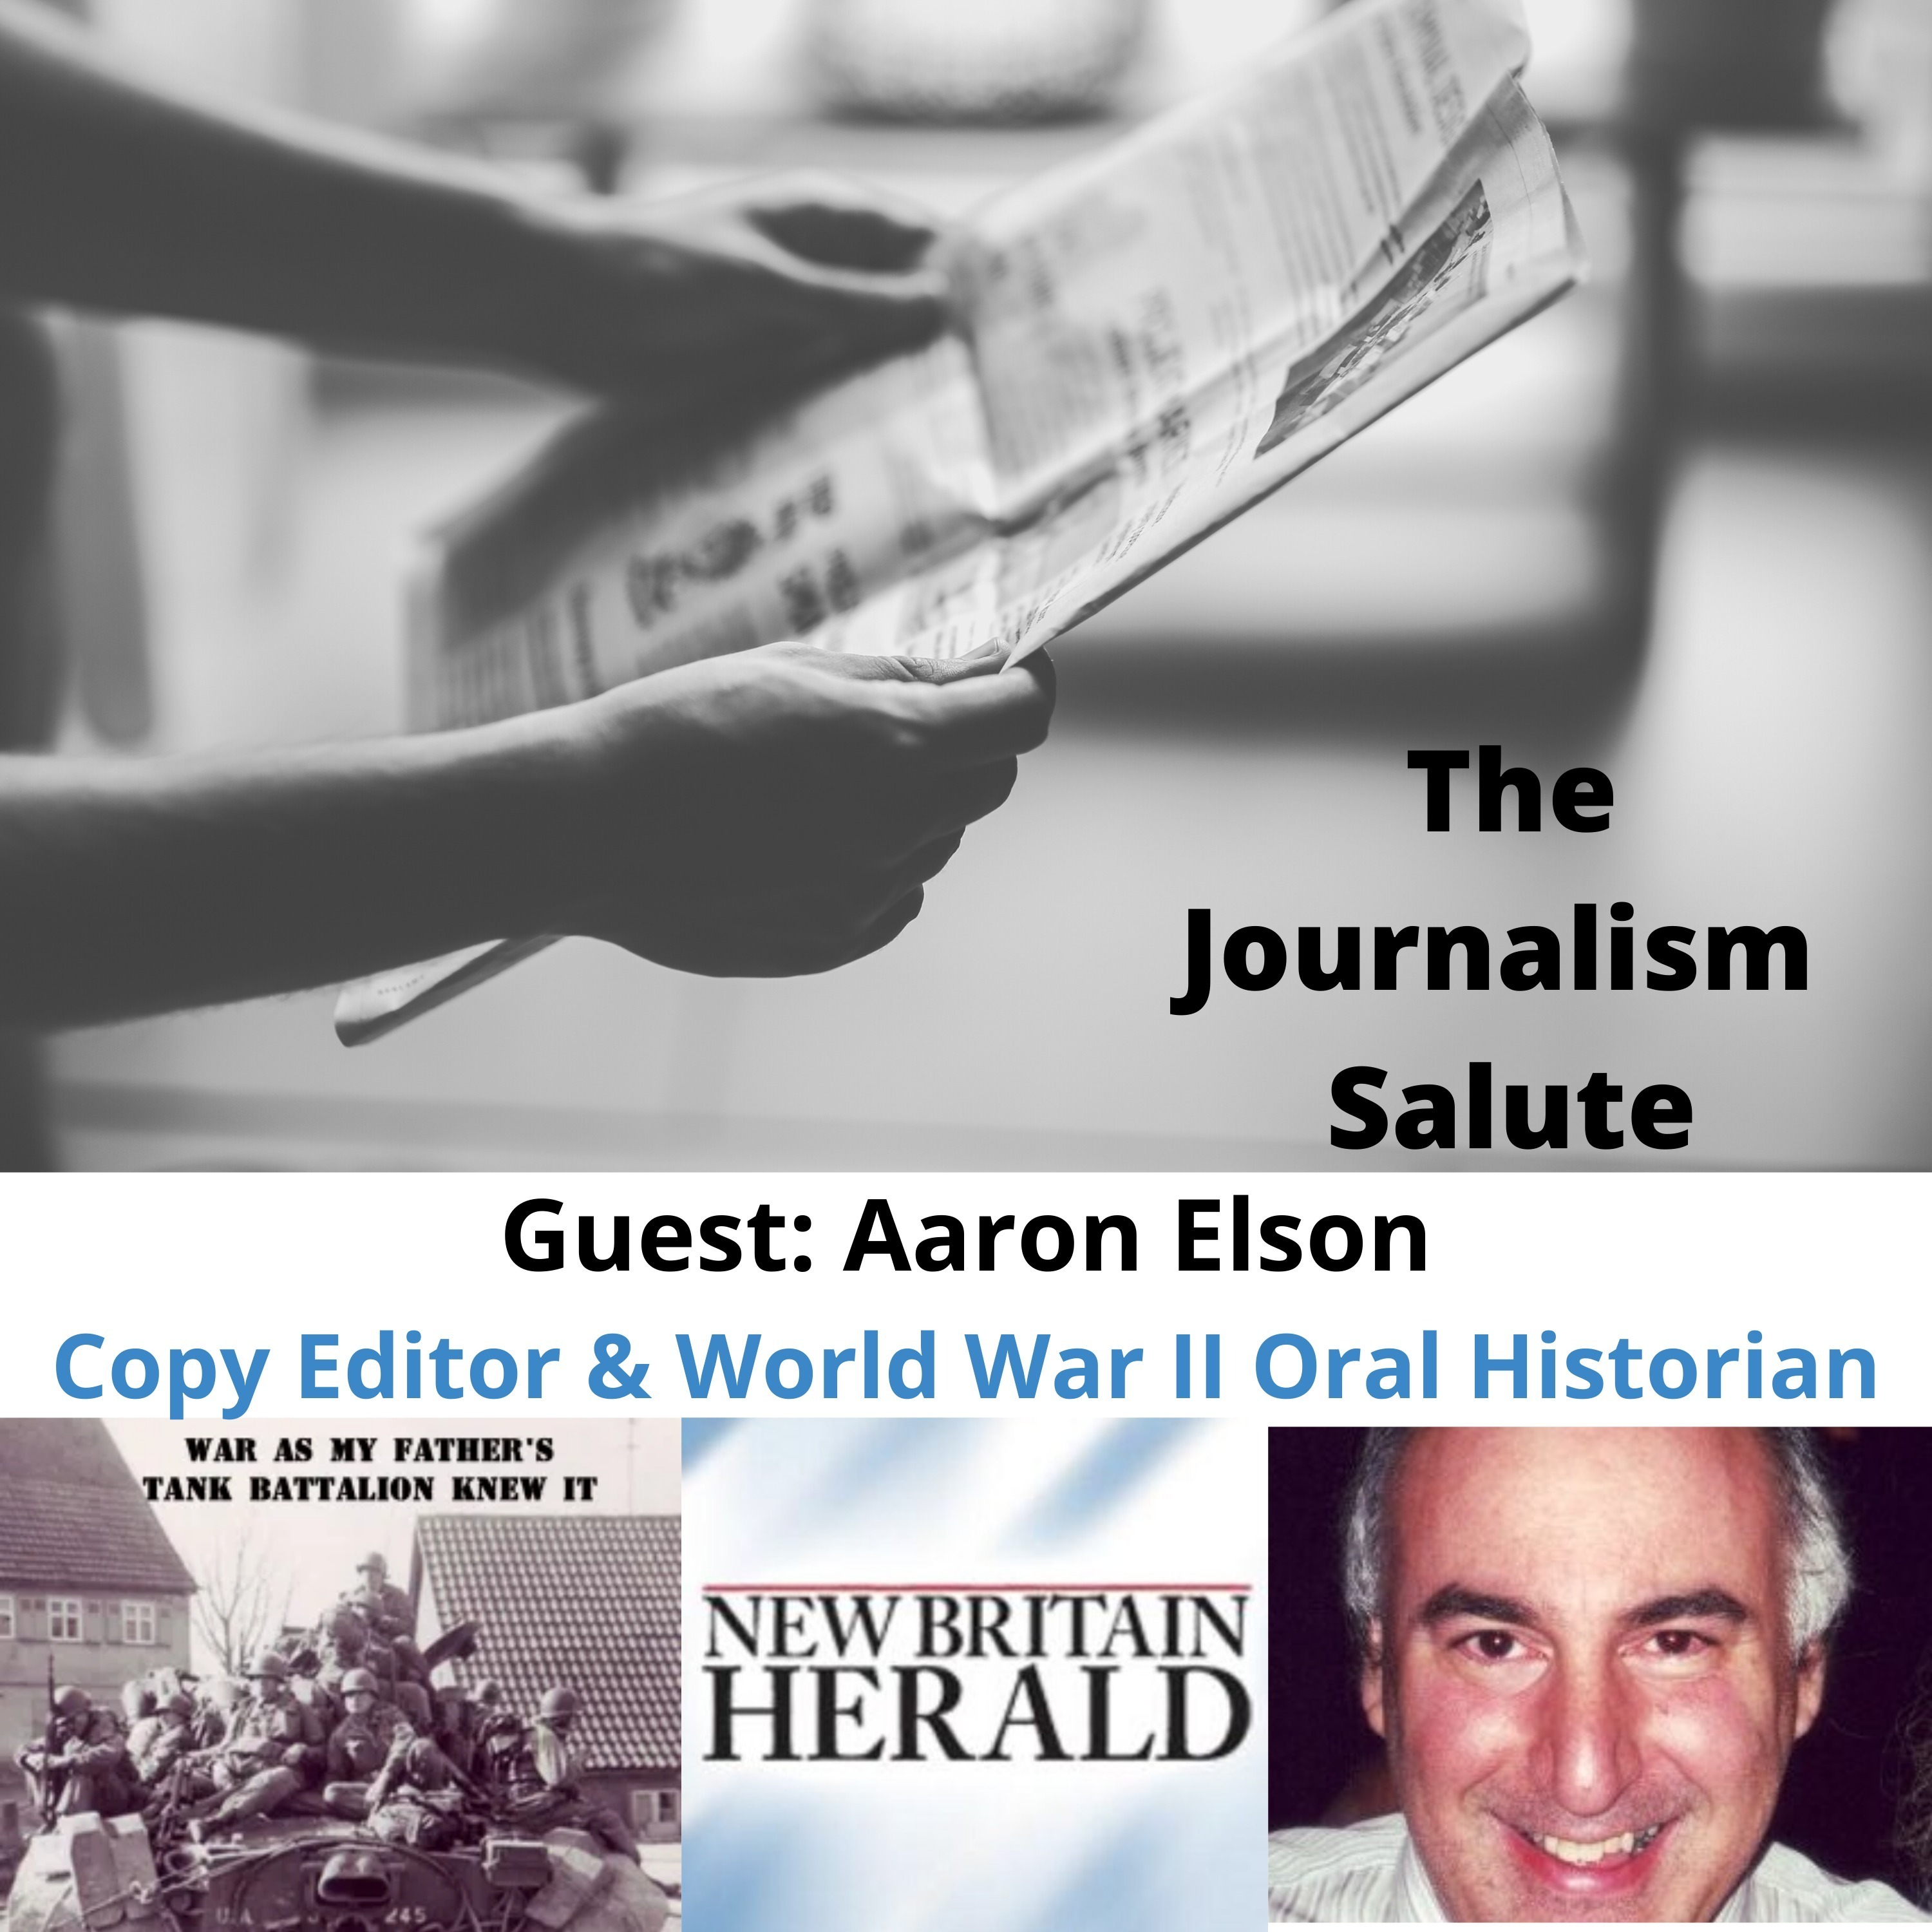 Aaron Elson: On Copy Editing & World War II Oral History